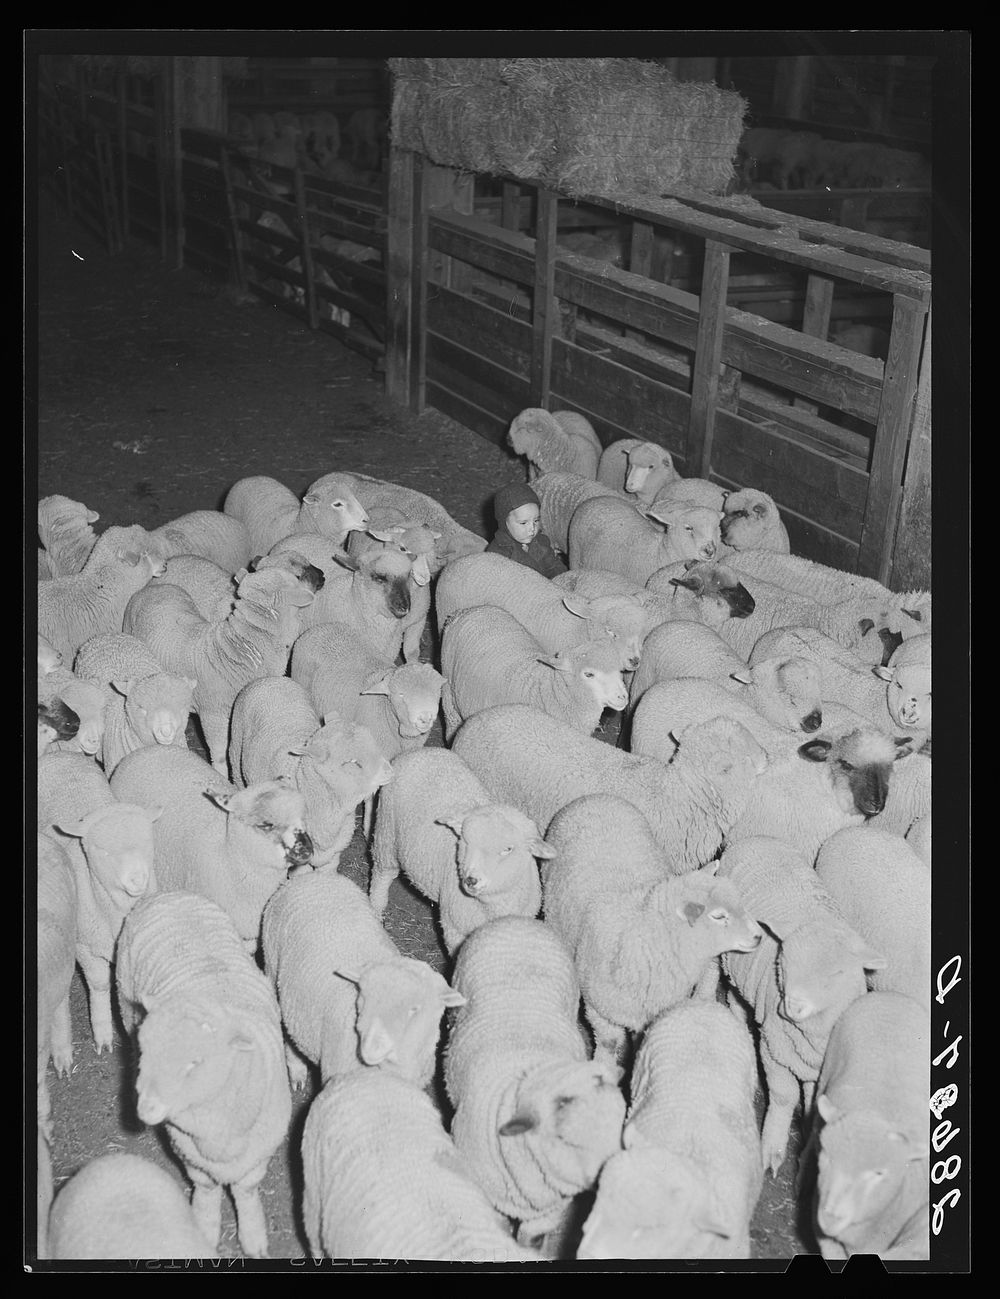 Rancher's son herding sheep. Stockyard, Denver, Colorado. Sourced from the Library of Congress.